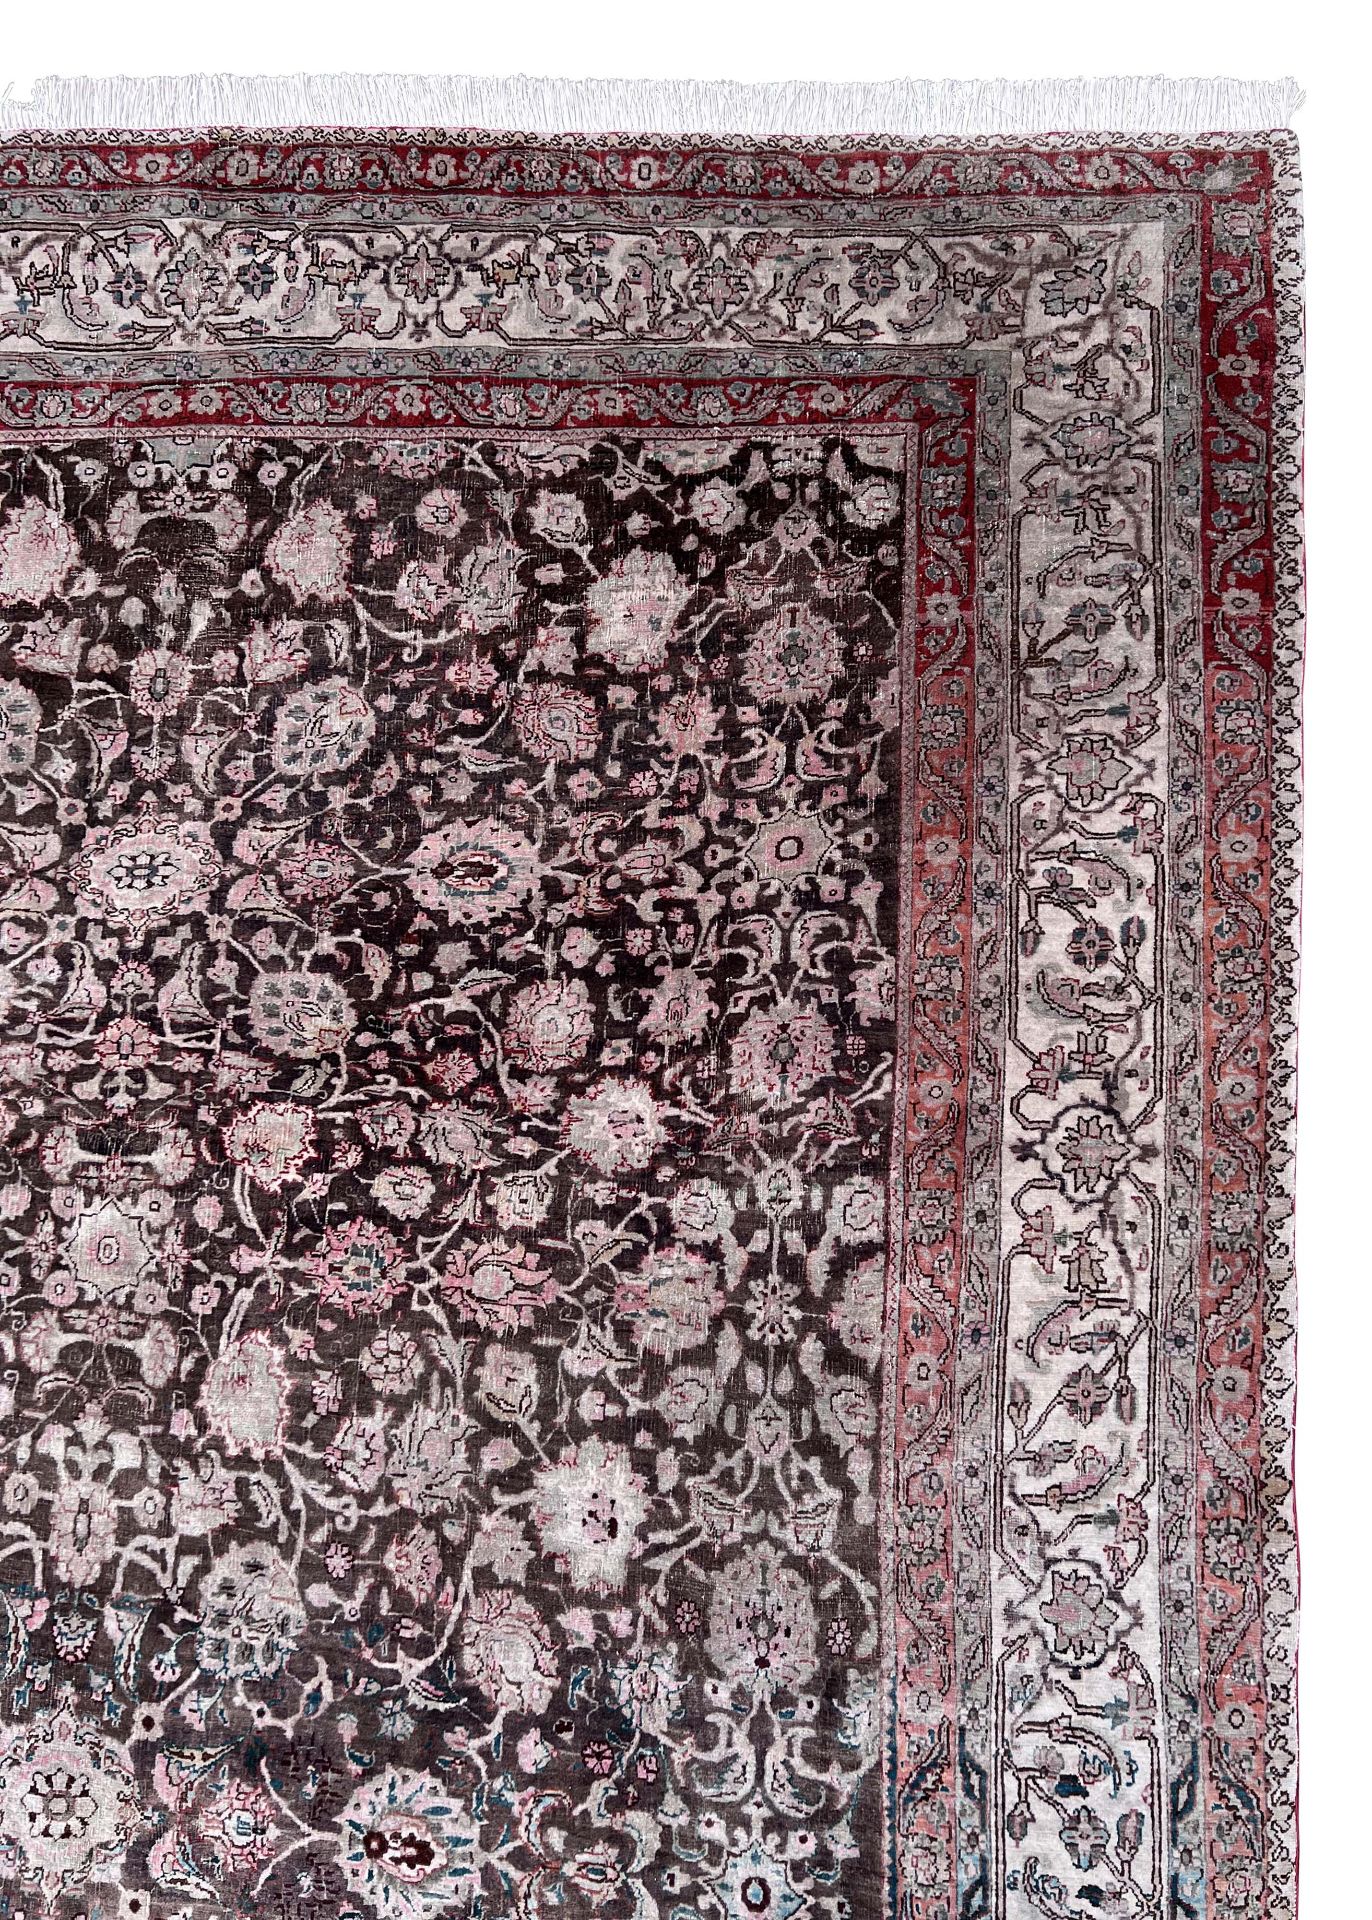 Decorative rug. Antique. Around 1900. - Image 4 of 19